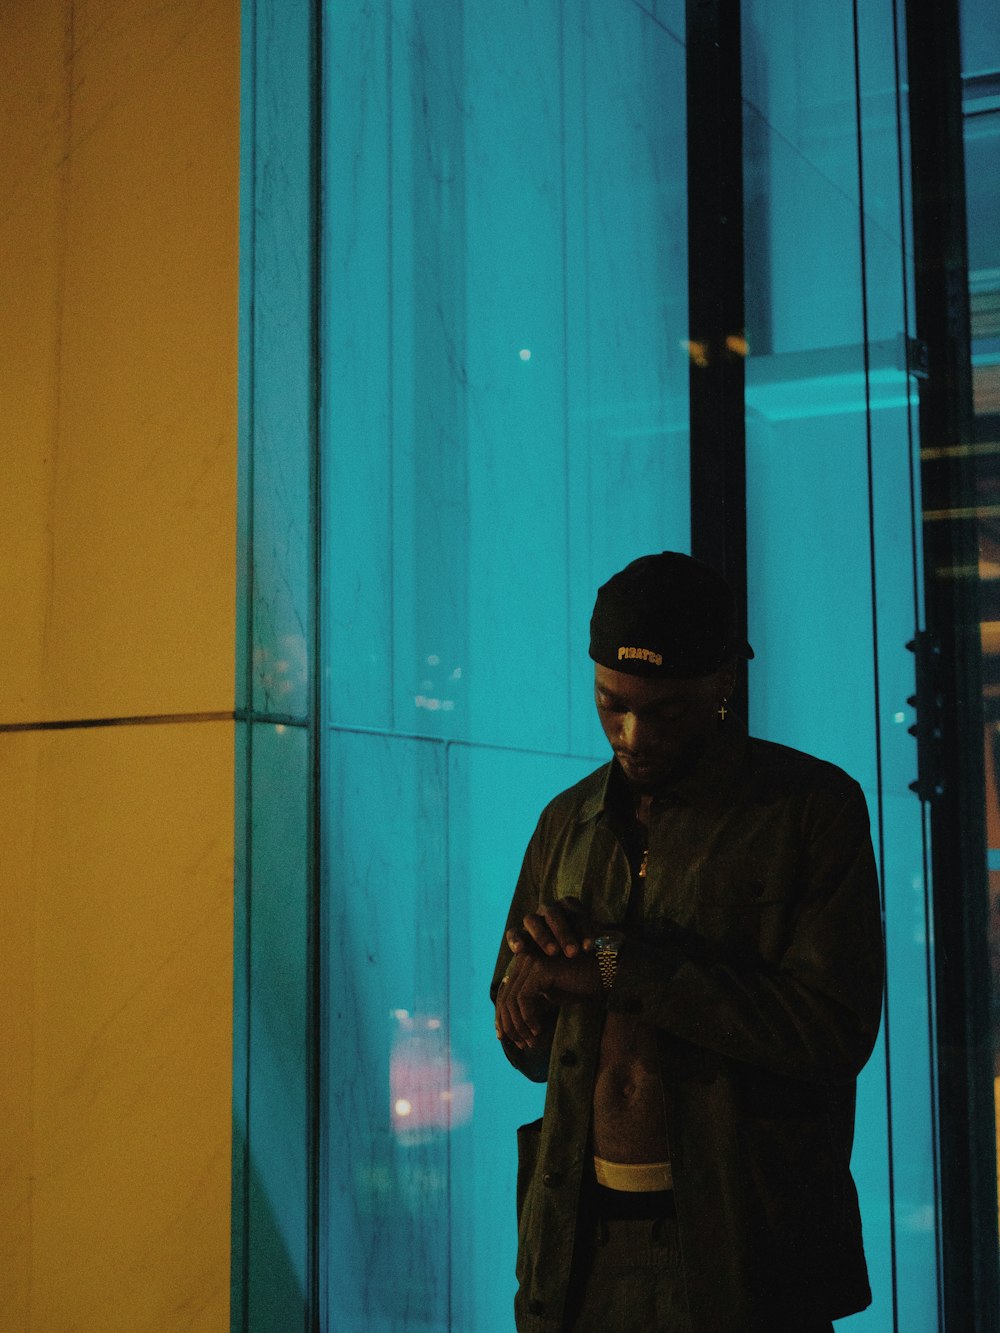 Mann in schwarzer Jacke in der Nähe der Glaswand